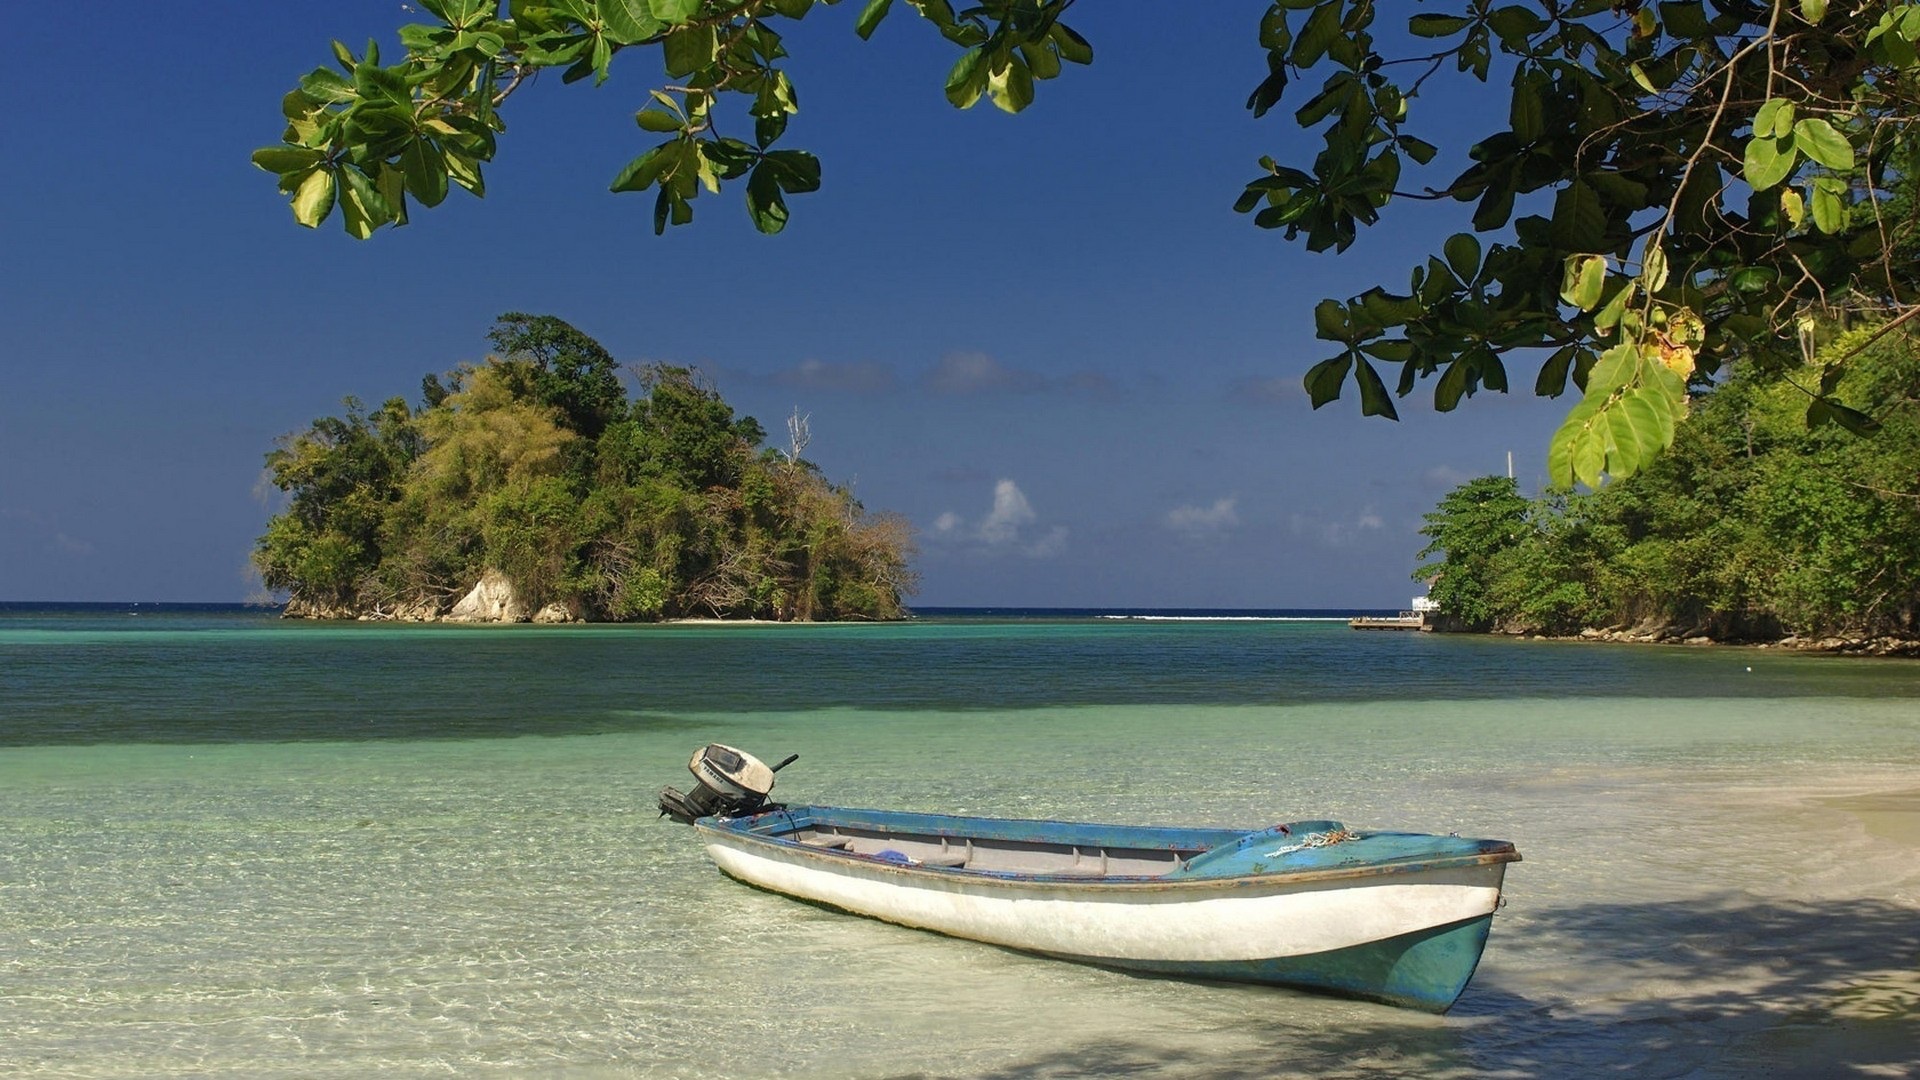 Boat island. Остров Ямайка. Карибское море Ямайка. Остров Ямайка картинки. Гаити и Ямайка.